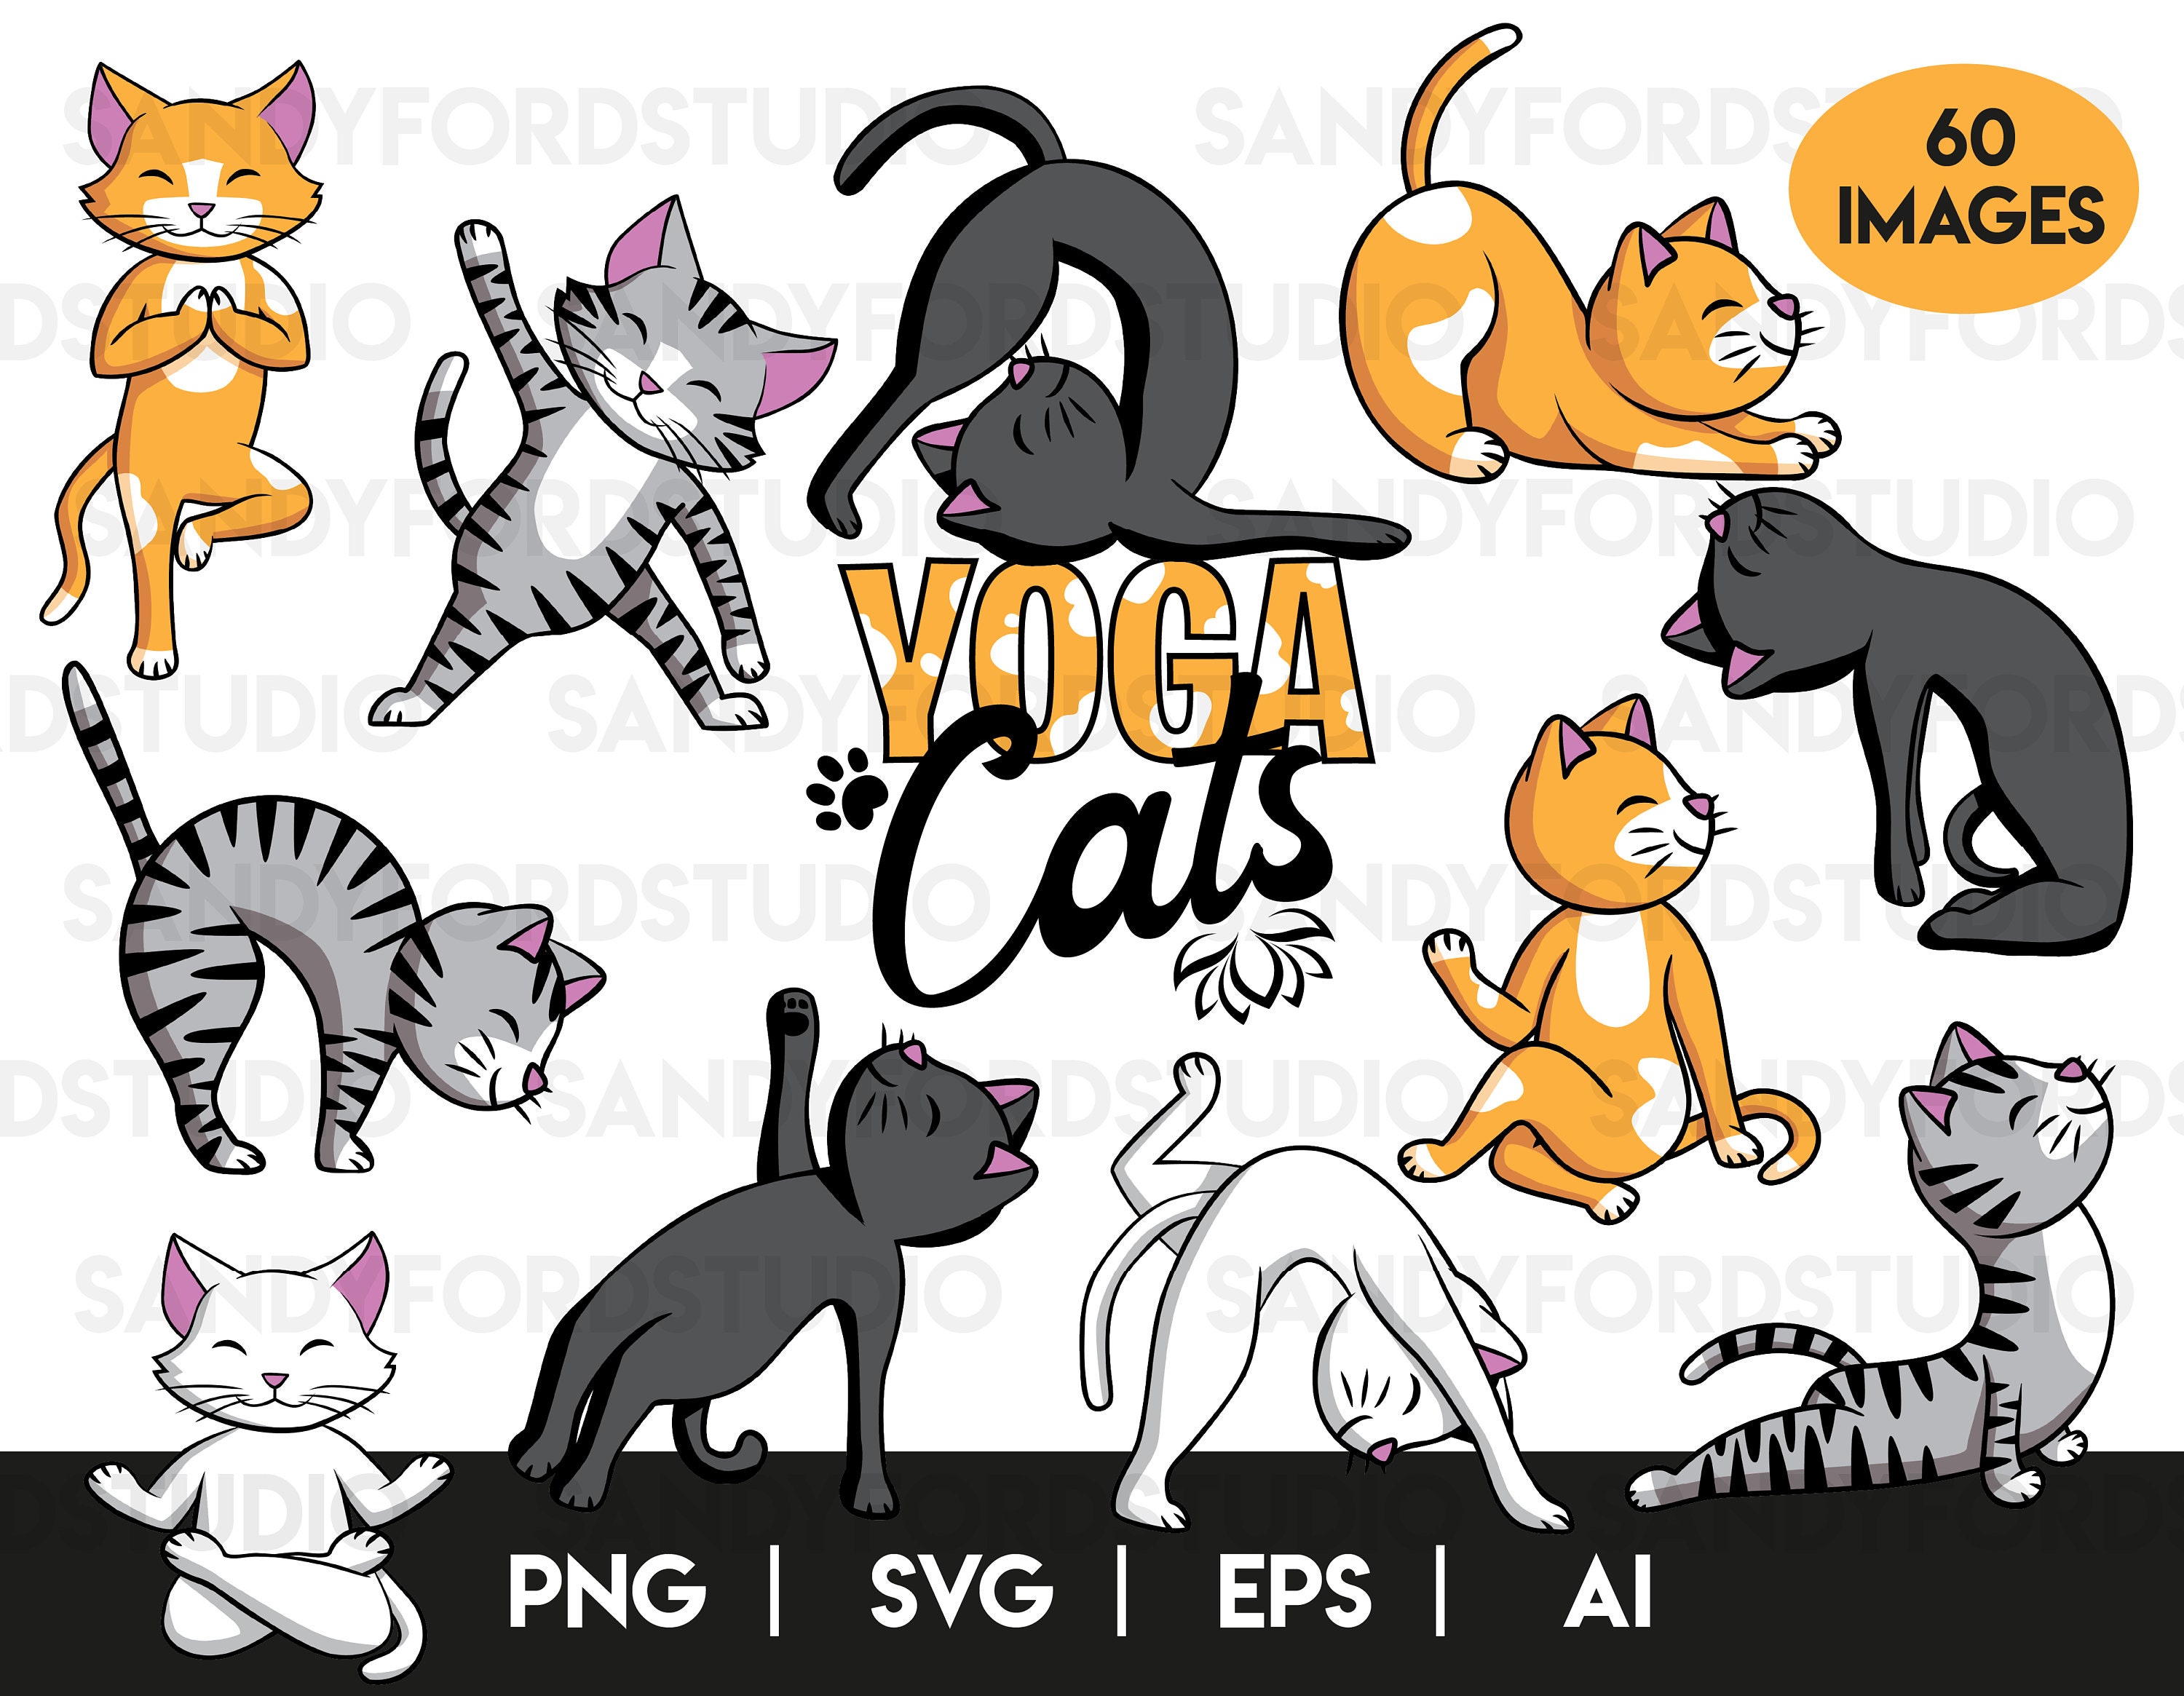 Yoga Cat Poster 